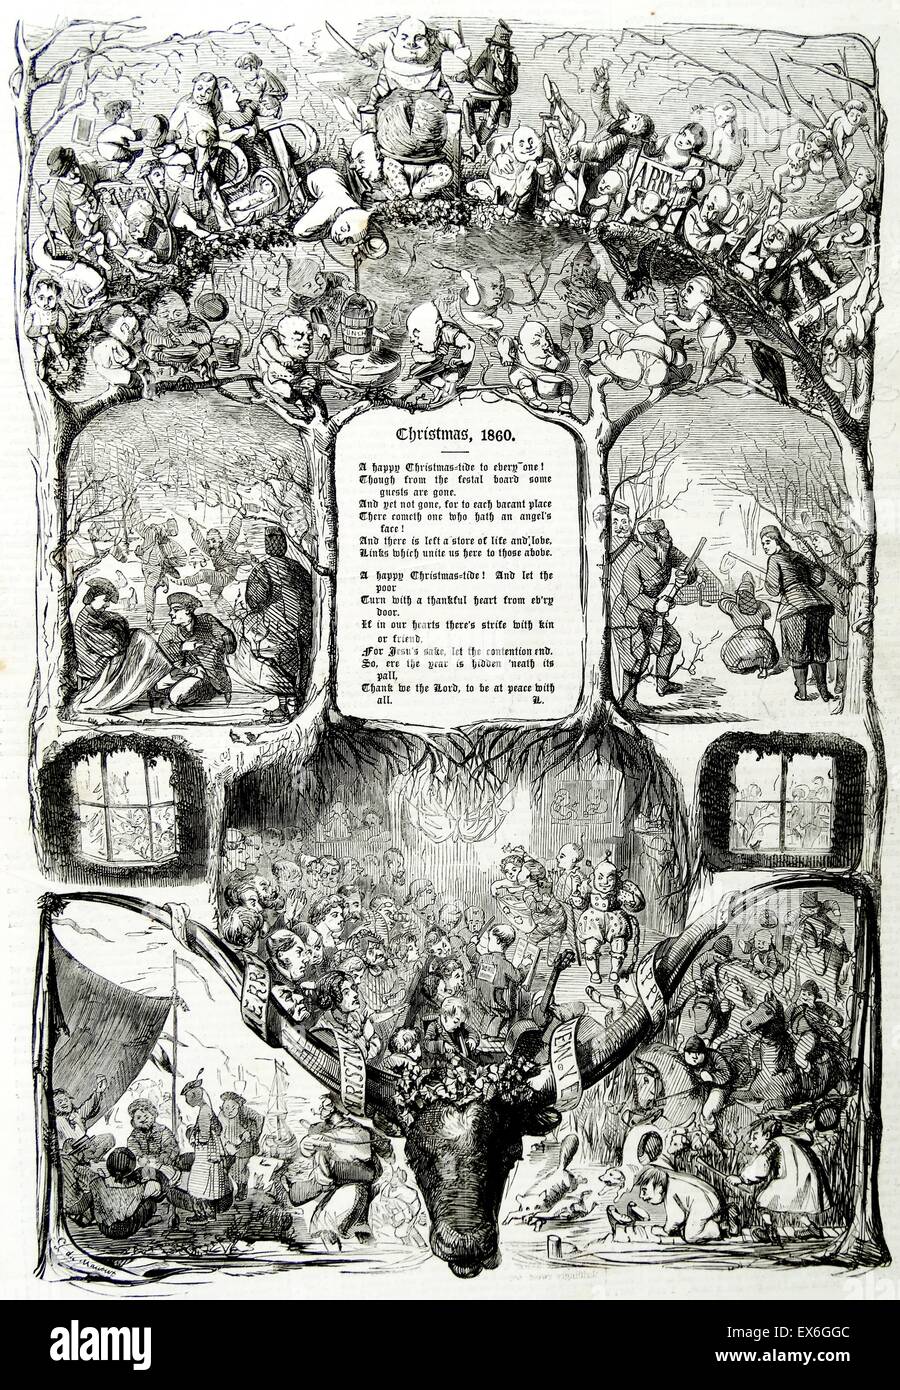 L'illustration de la page de titre d'un journal britannique de Noël 1860 Banque D'Images